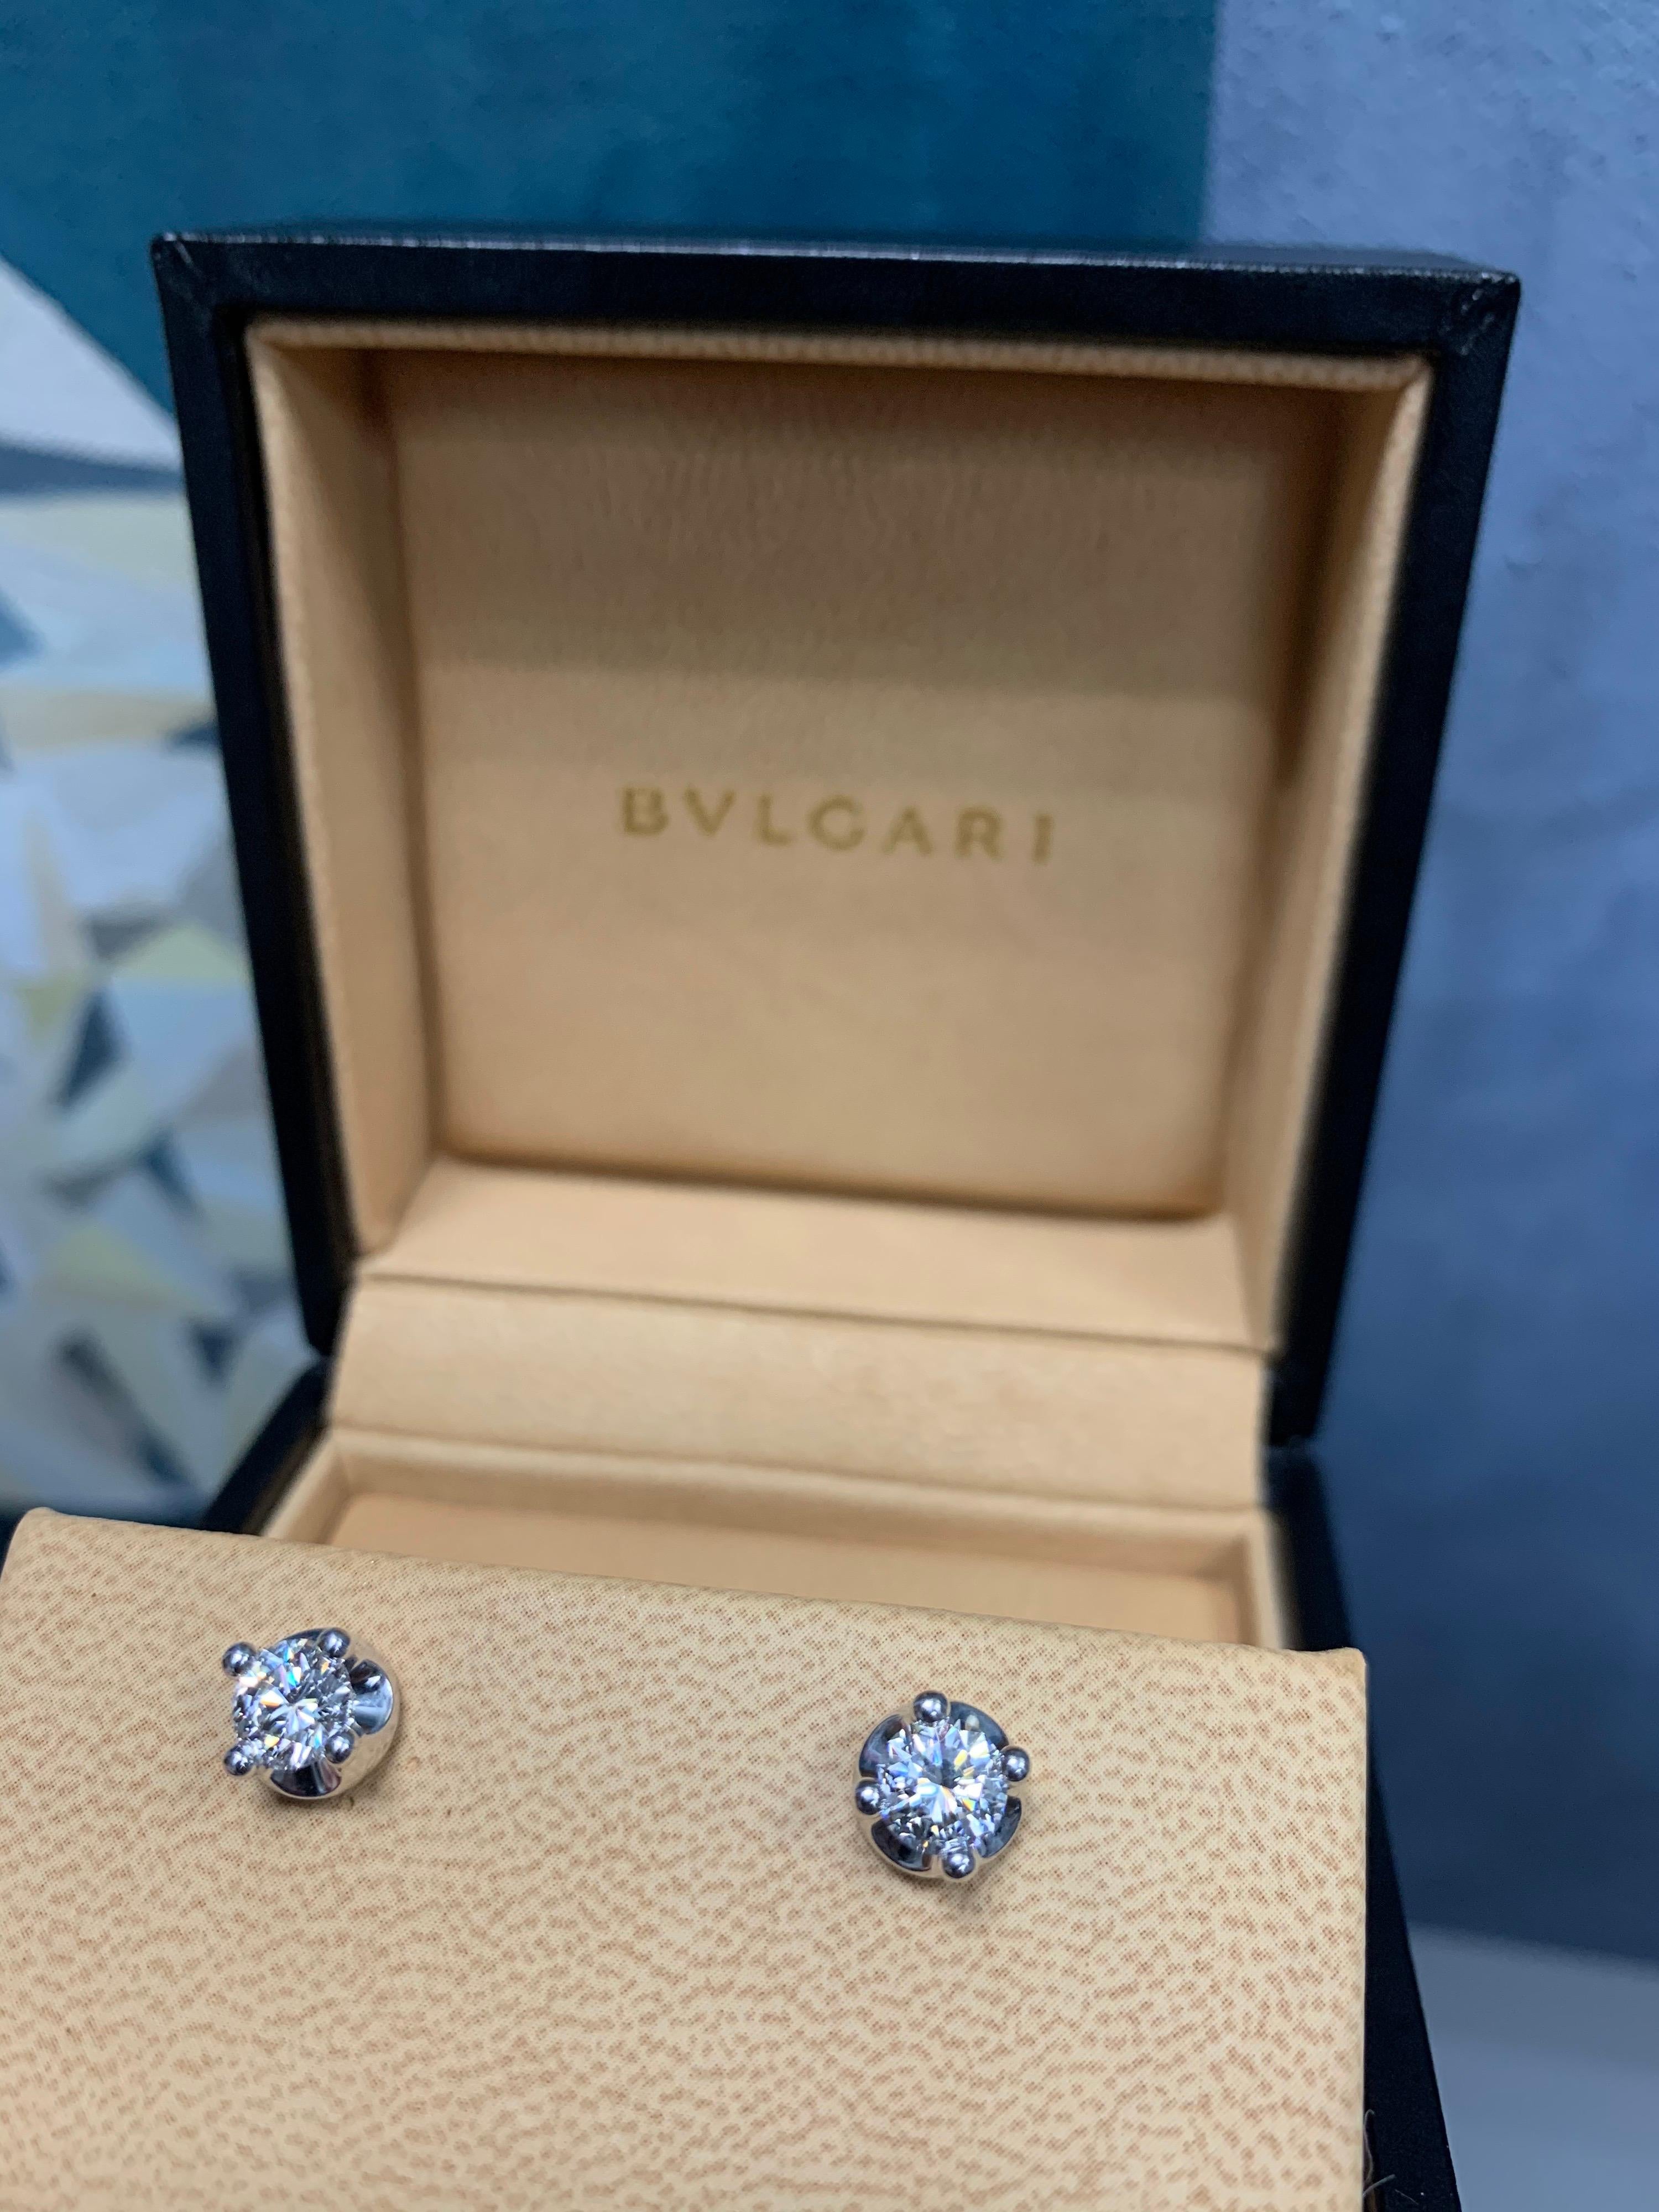 Modern 18k Gold BULGARI 1.40 Carat GIA Certified Natural D Color VS Diamond Earrings.

Original Box & Papers included.